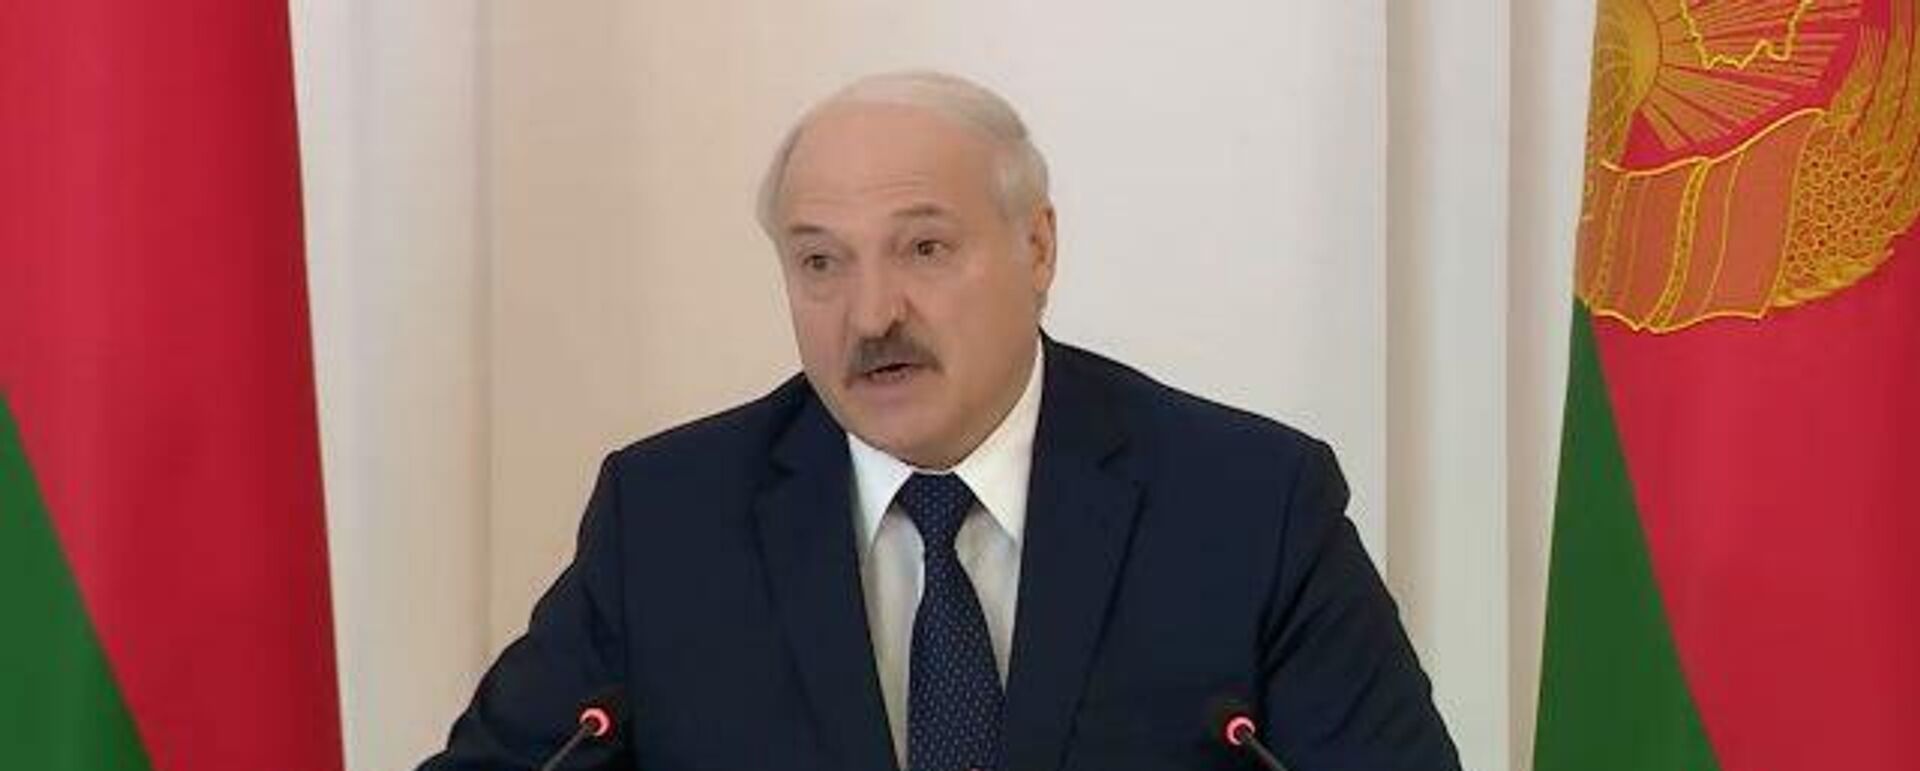 Лукашенко рассказал, какие документы привез на встречу с Путиным - Sputnik Latvija, 1920, 03.06.2021